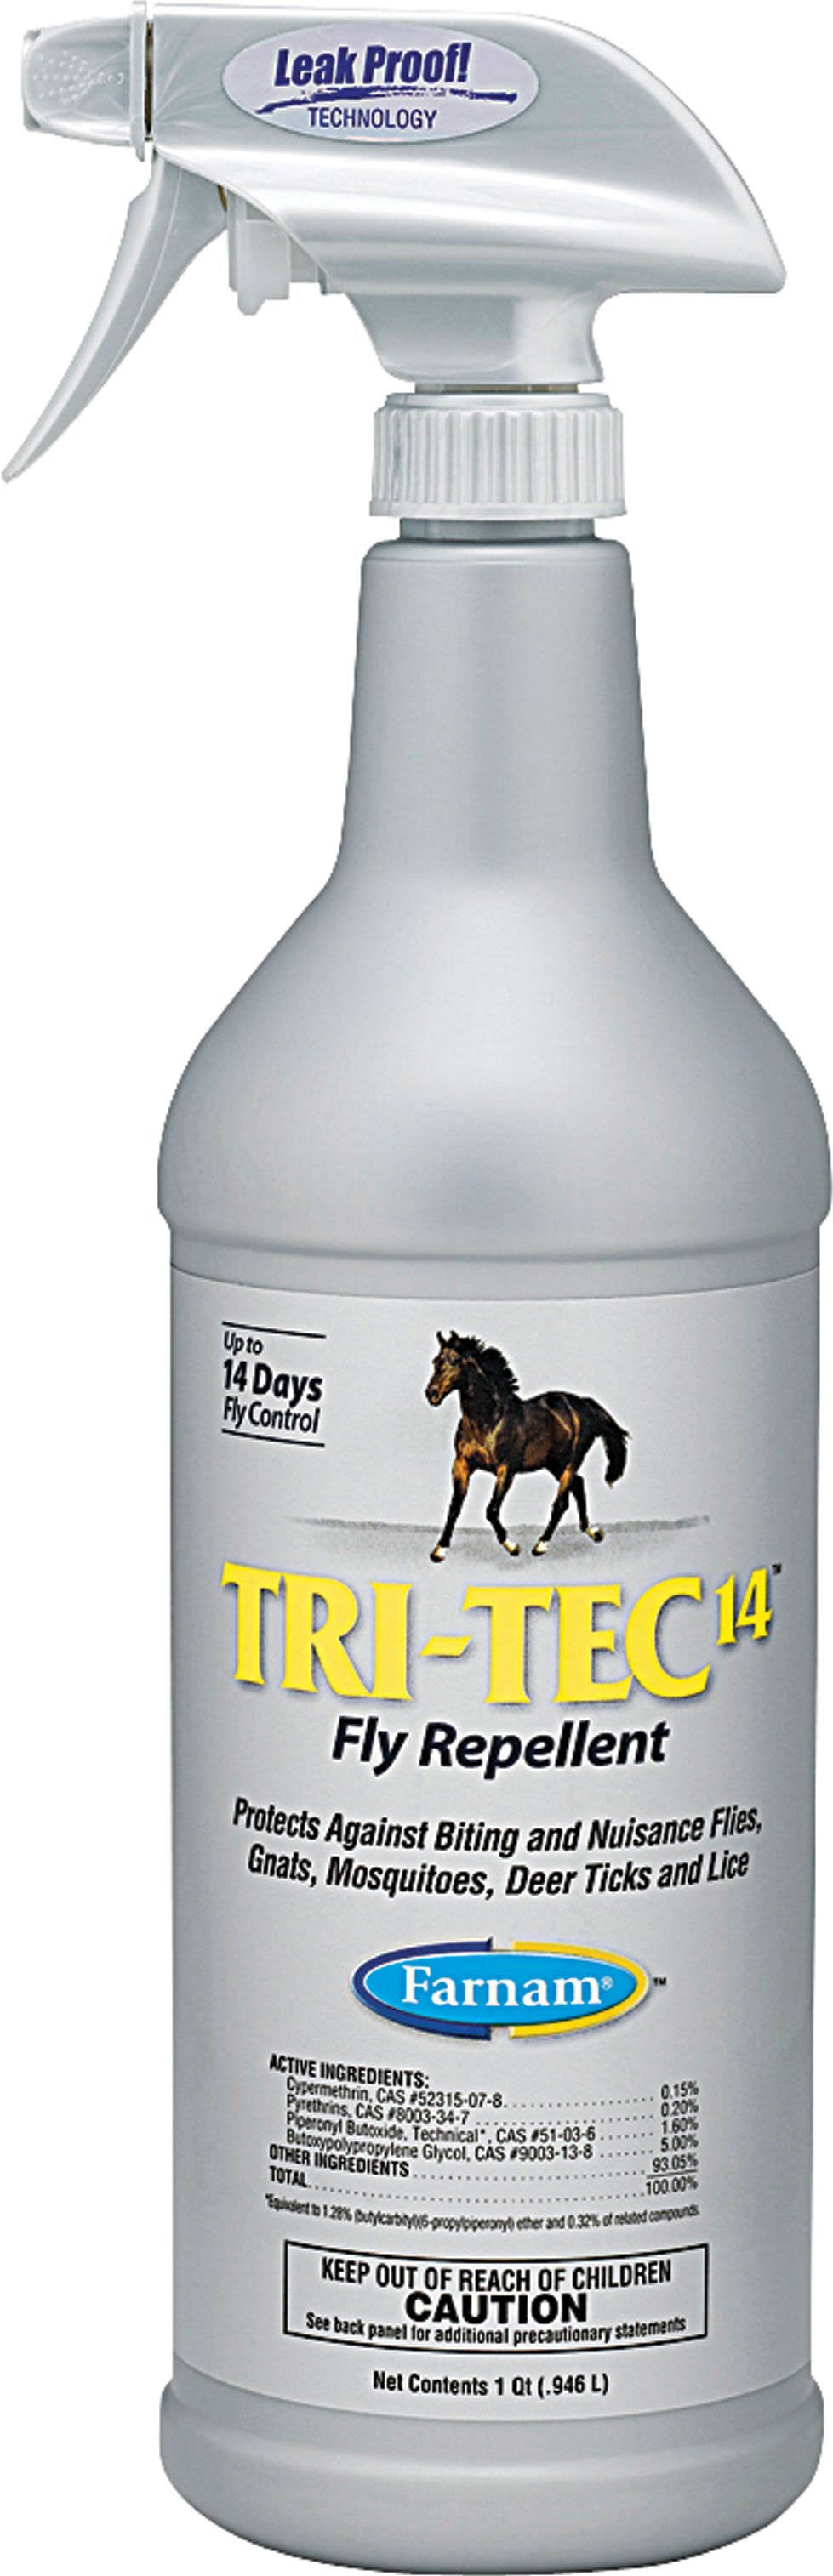 Farnam Tri-tec 14 Horse Fly Repellent - 32oz